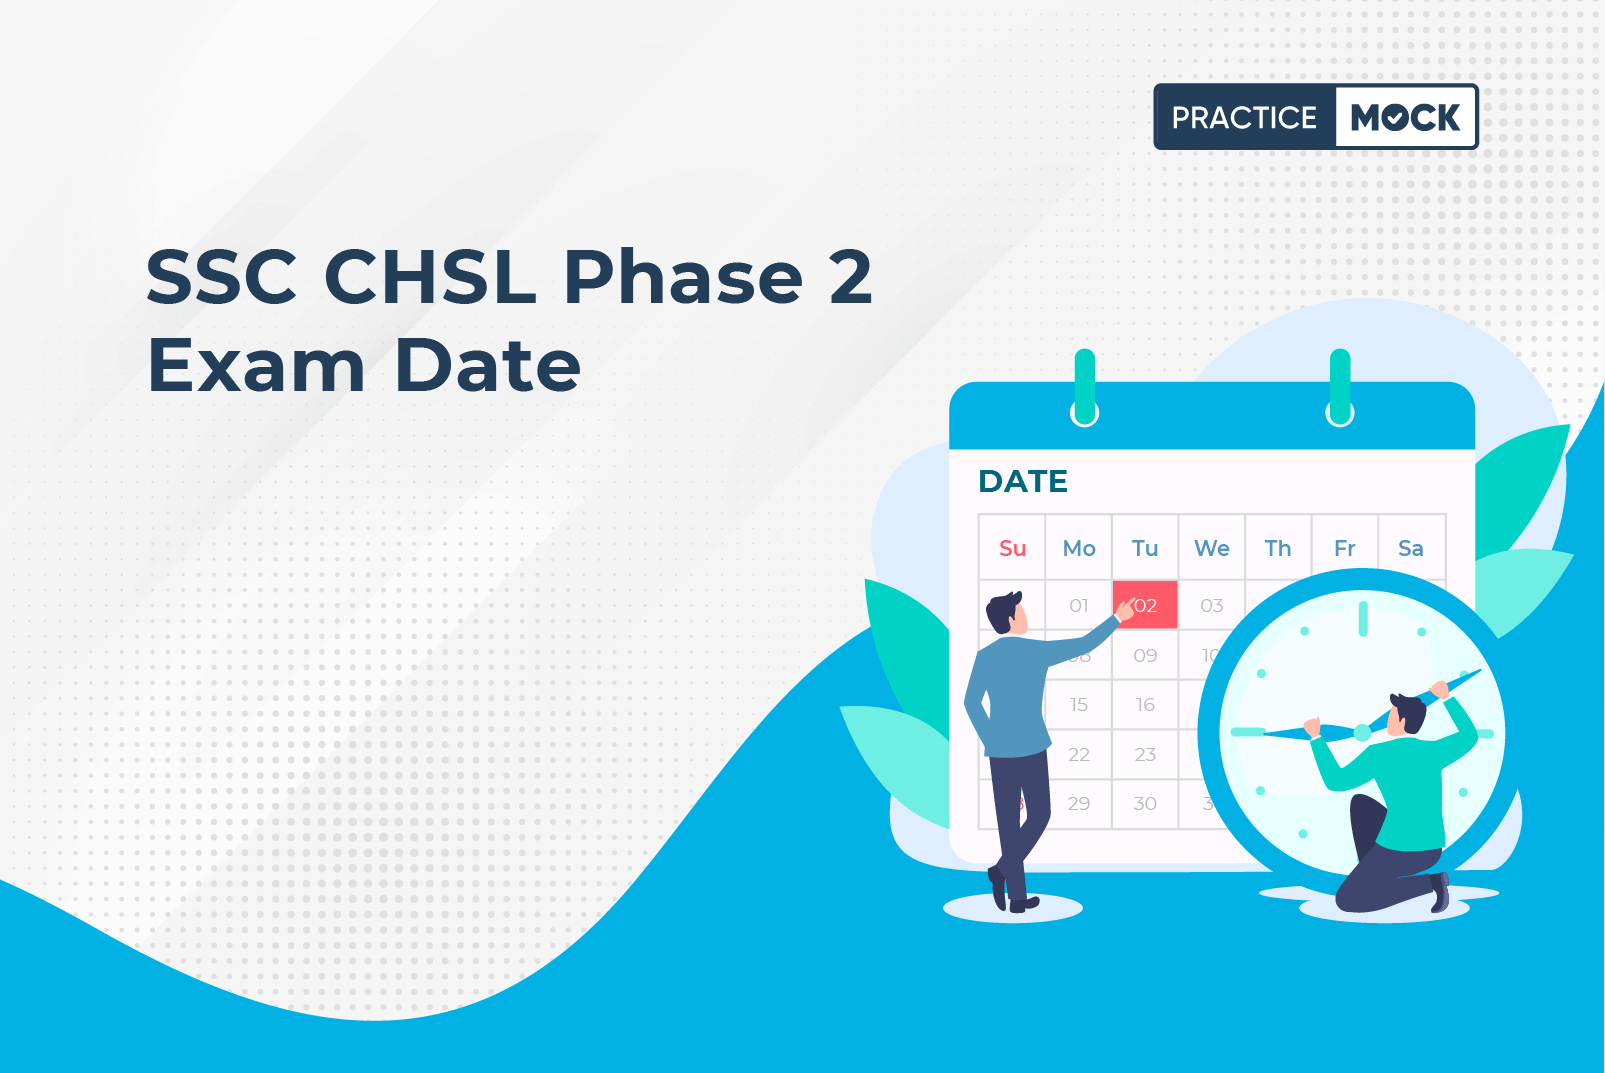 SSC CHSL Exam Date